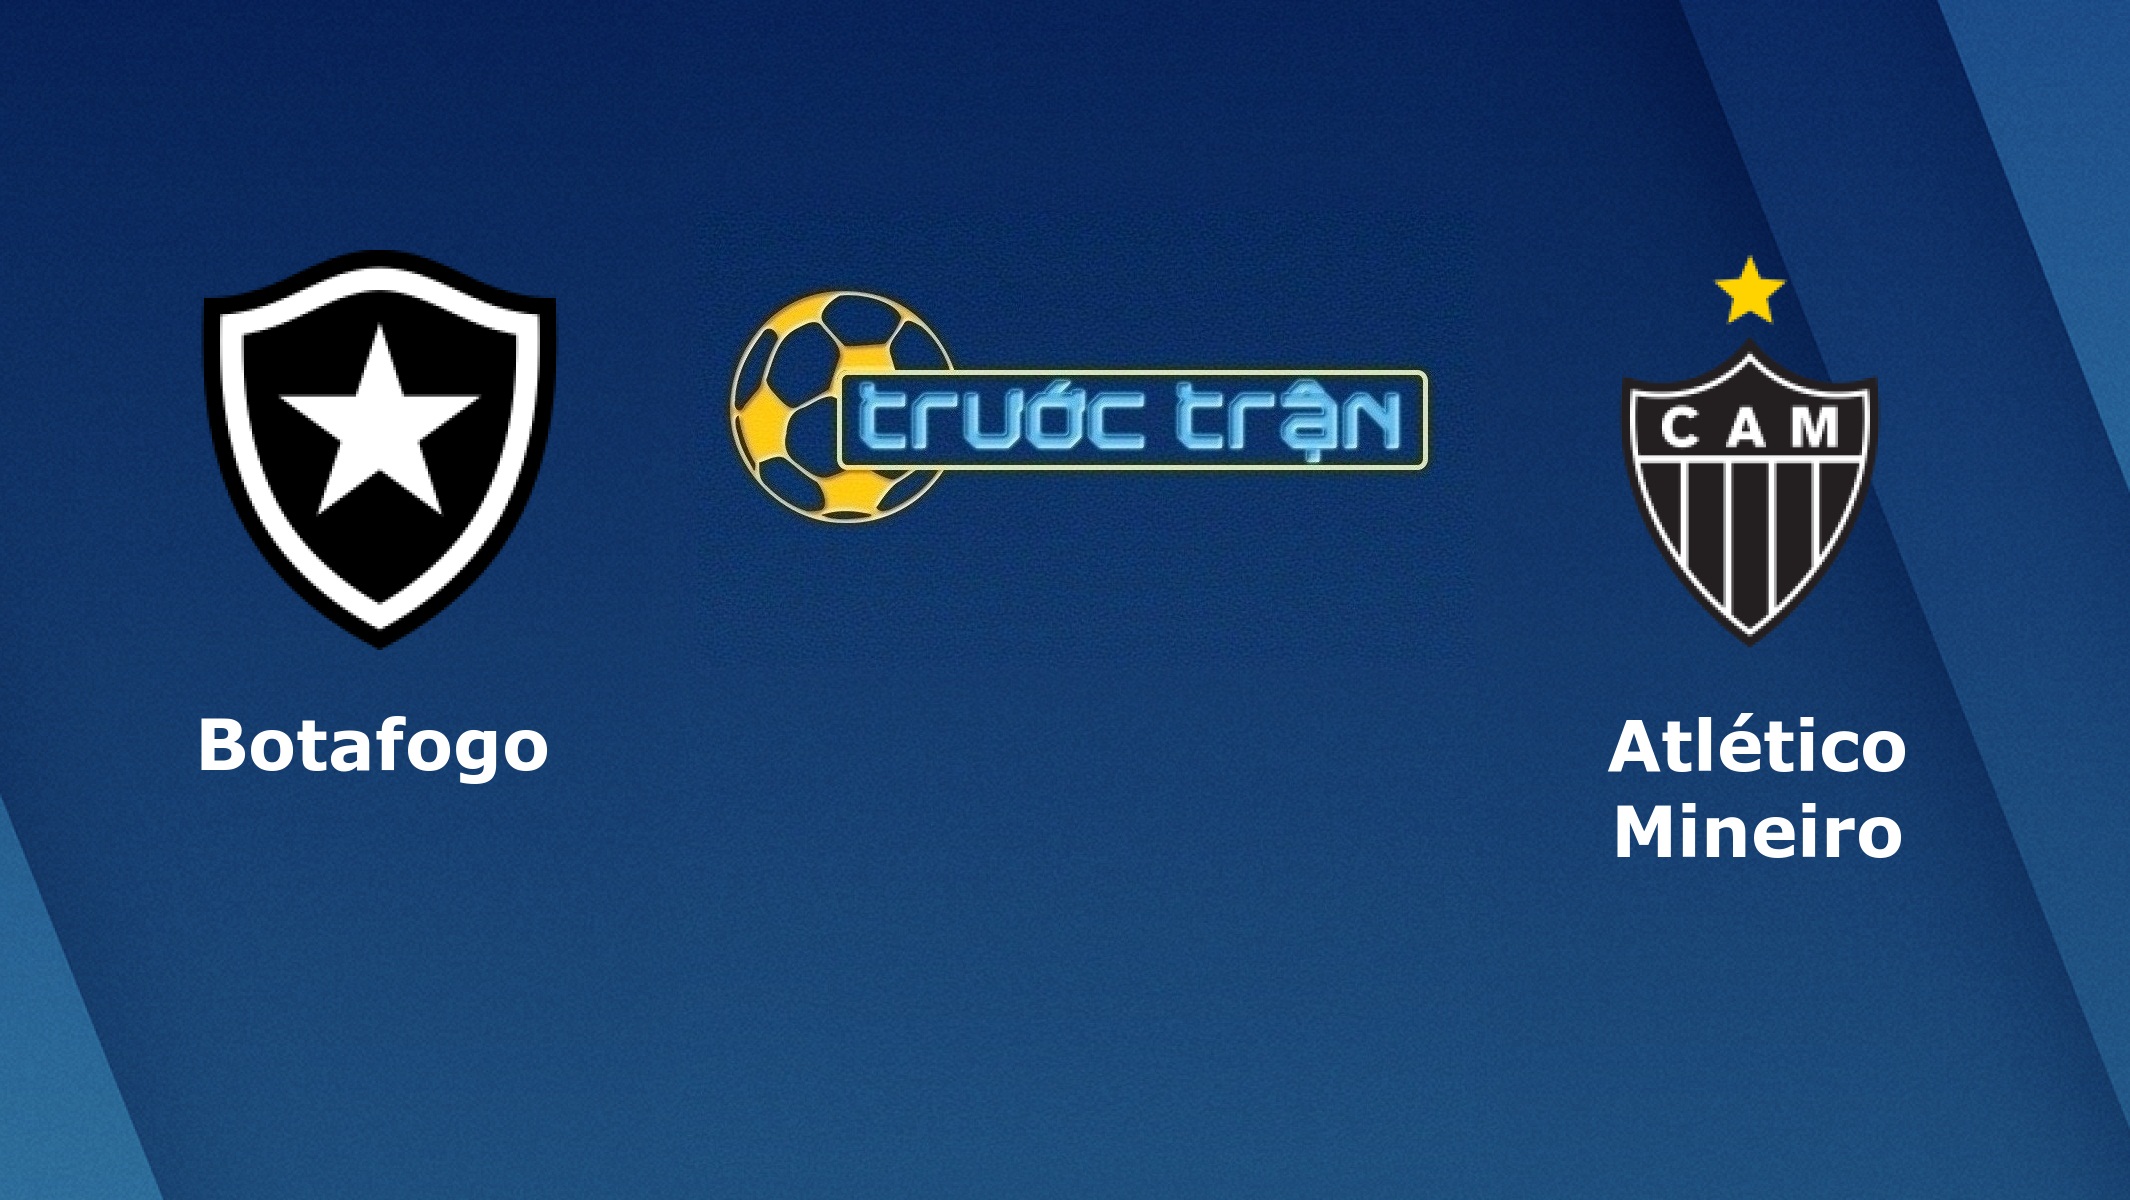 Botafogo vs Atletico Mineiro – Tip kèo bóng đá hôm nay – 09/09